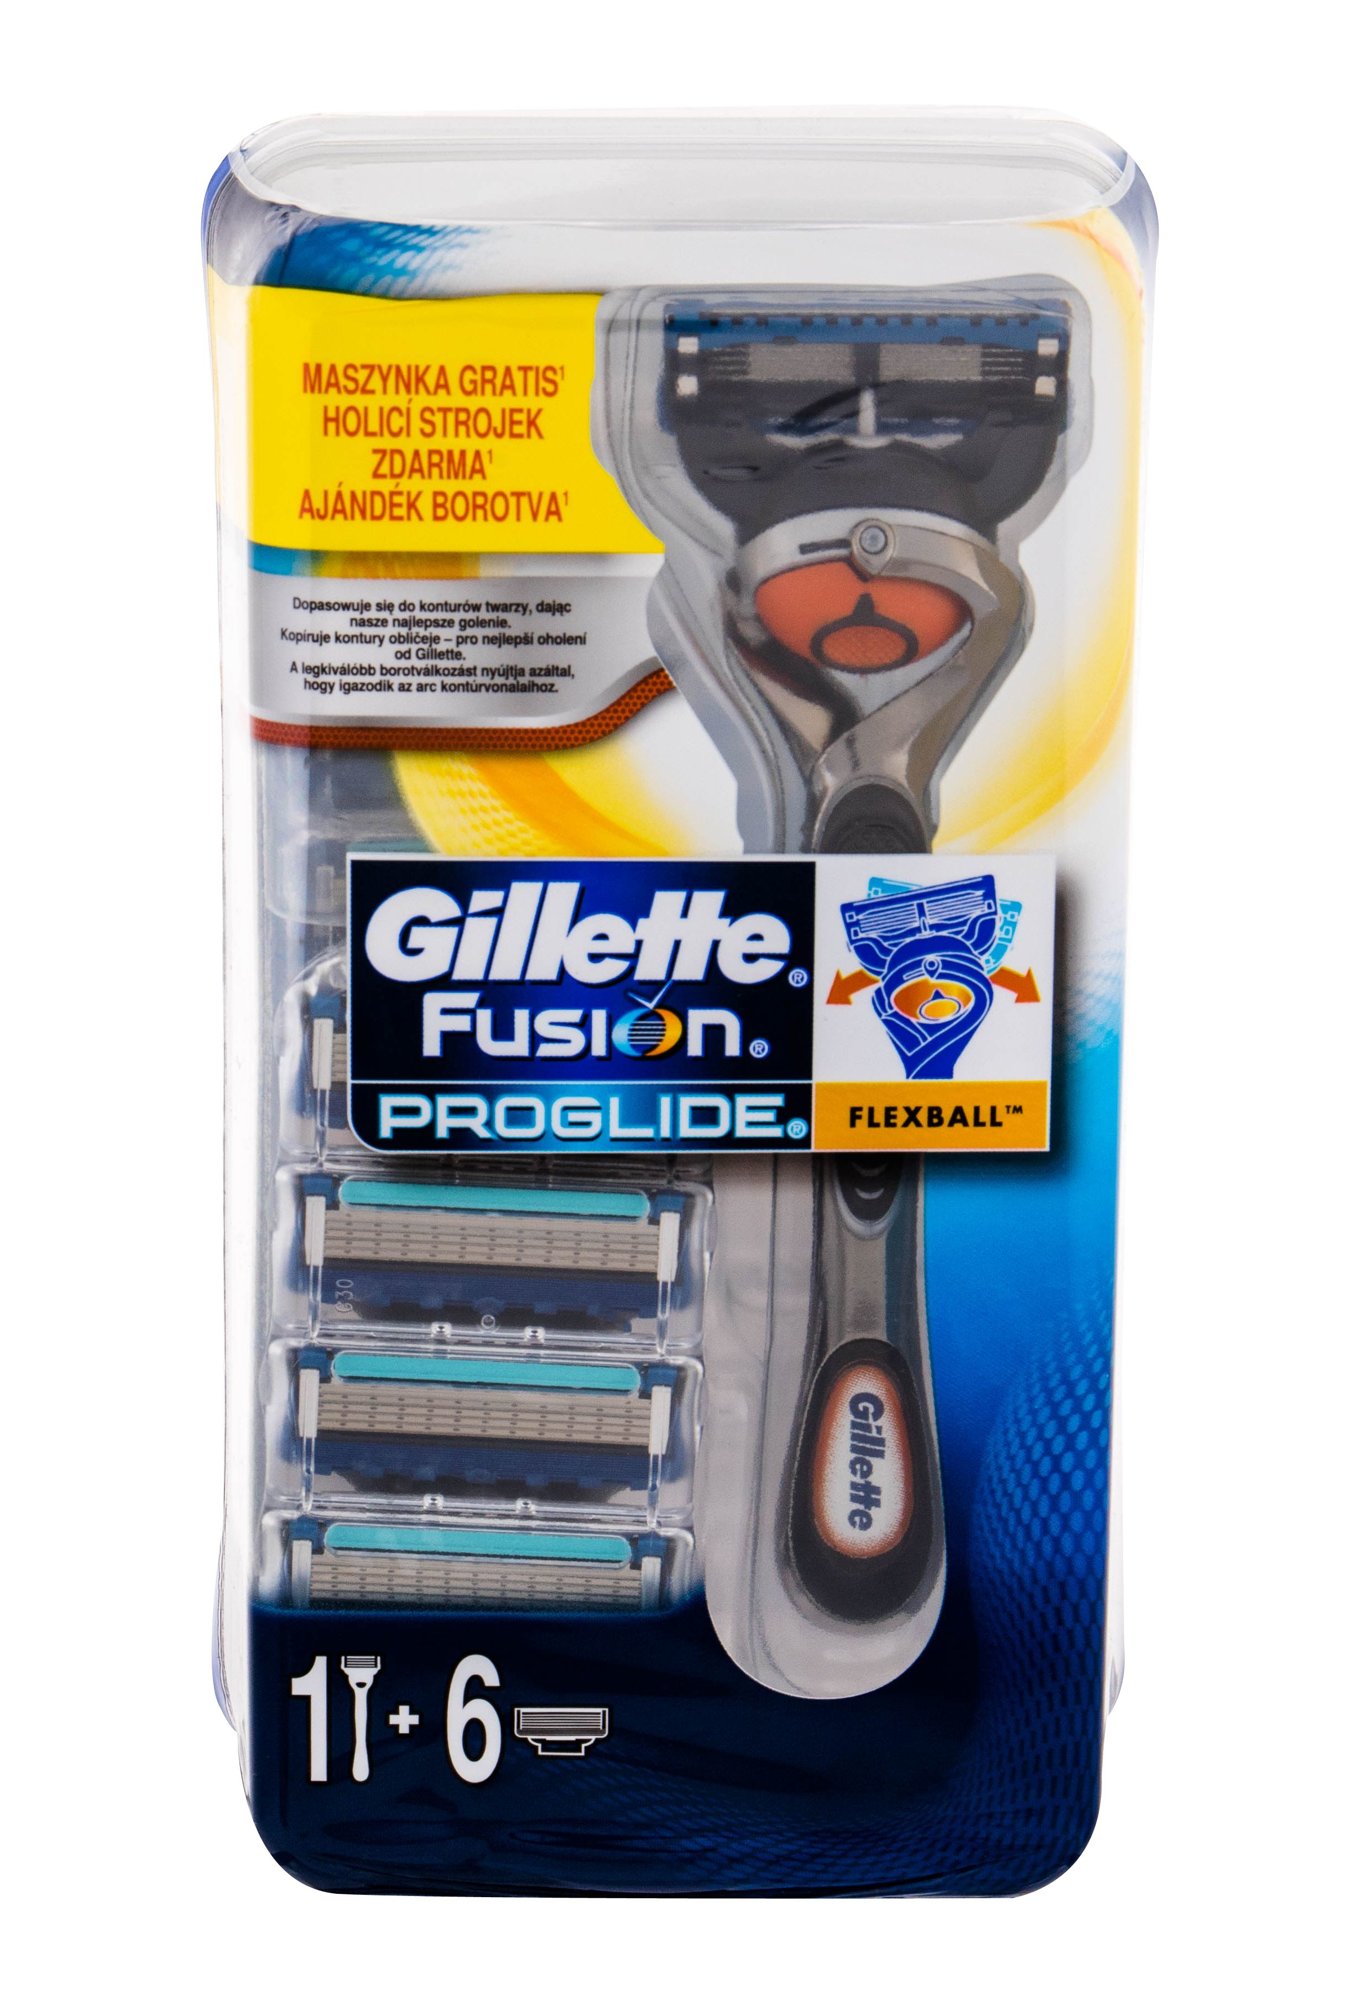 Gillette Fusion Proglide skustuvas